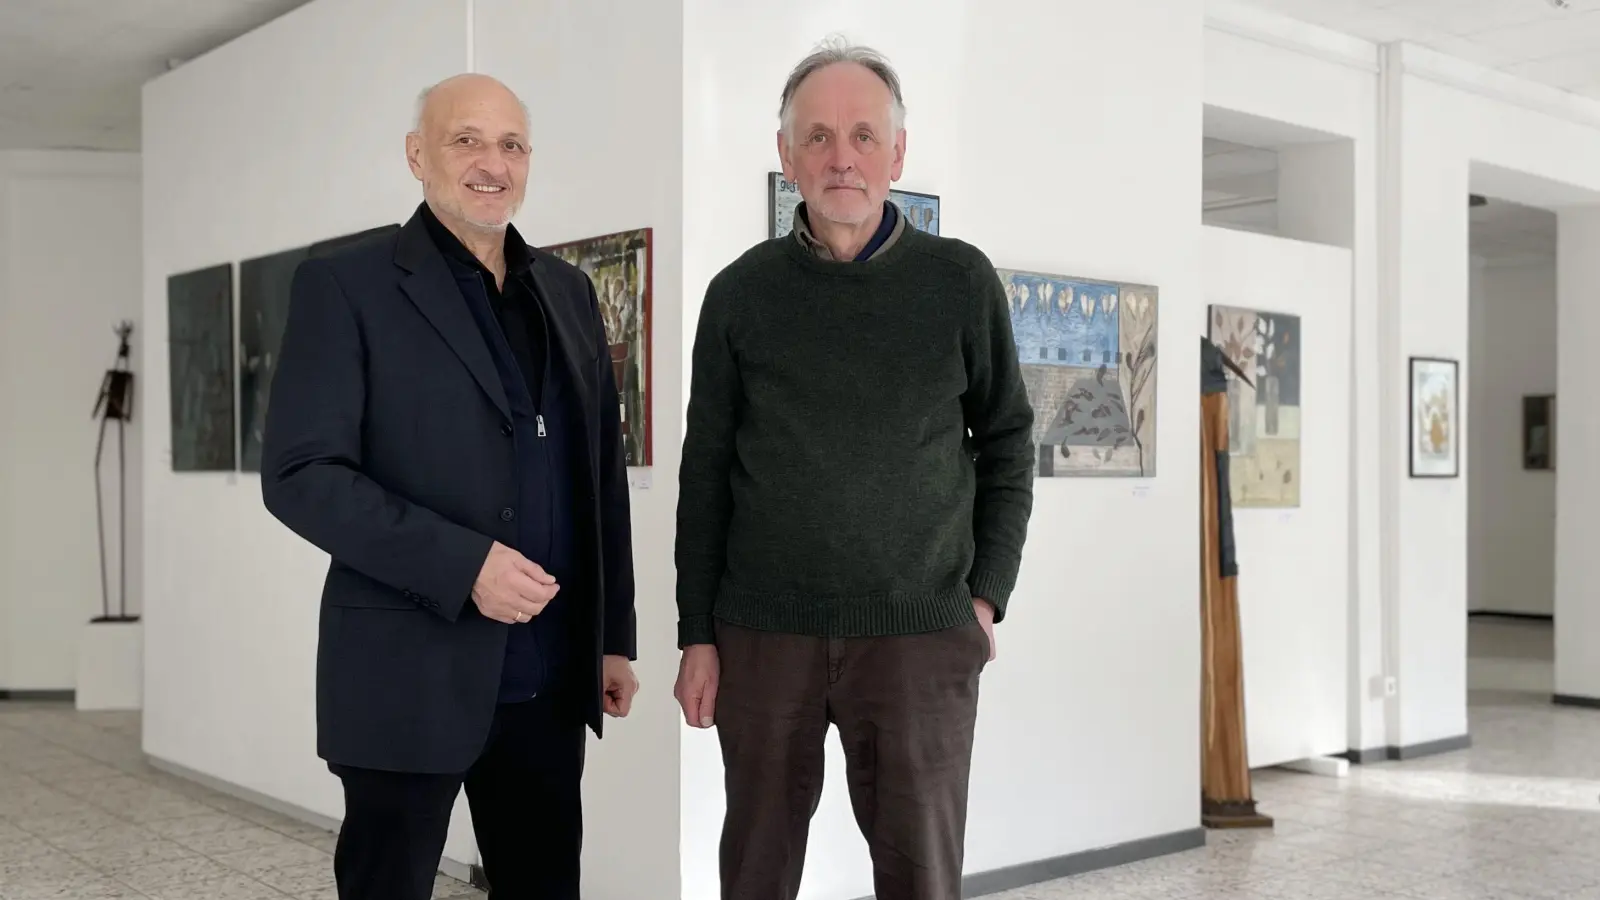 Leiten den Fachbereich Bildende Kunst im Kulturforum Ansbach und koordinieren den Ausstellungsbetrieb: Hermann Knöchel (links) und Hans Ruppert. (Foto: Thomas Wirth)